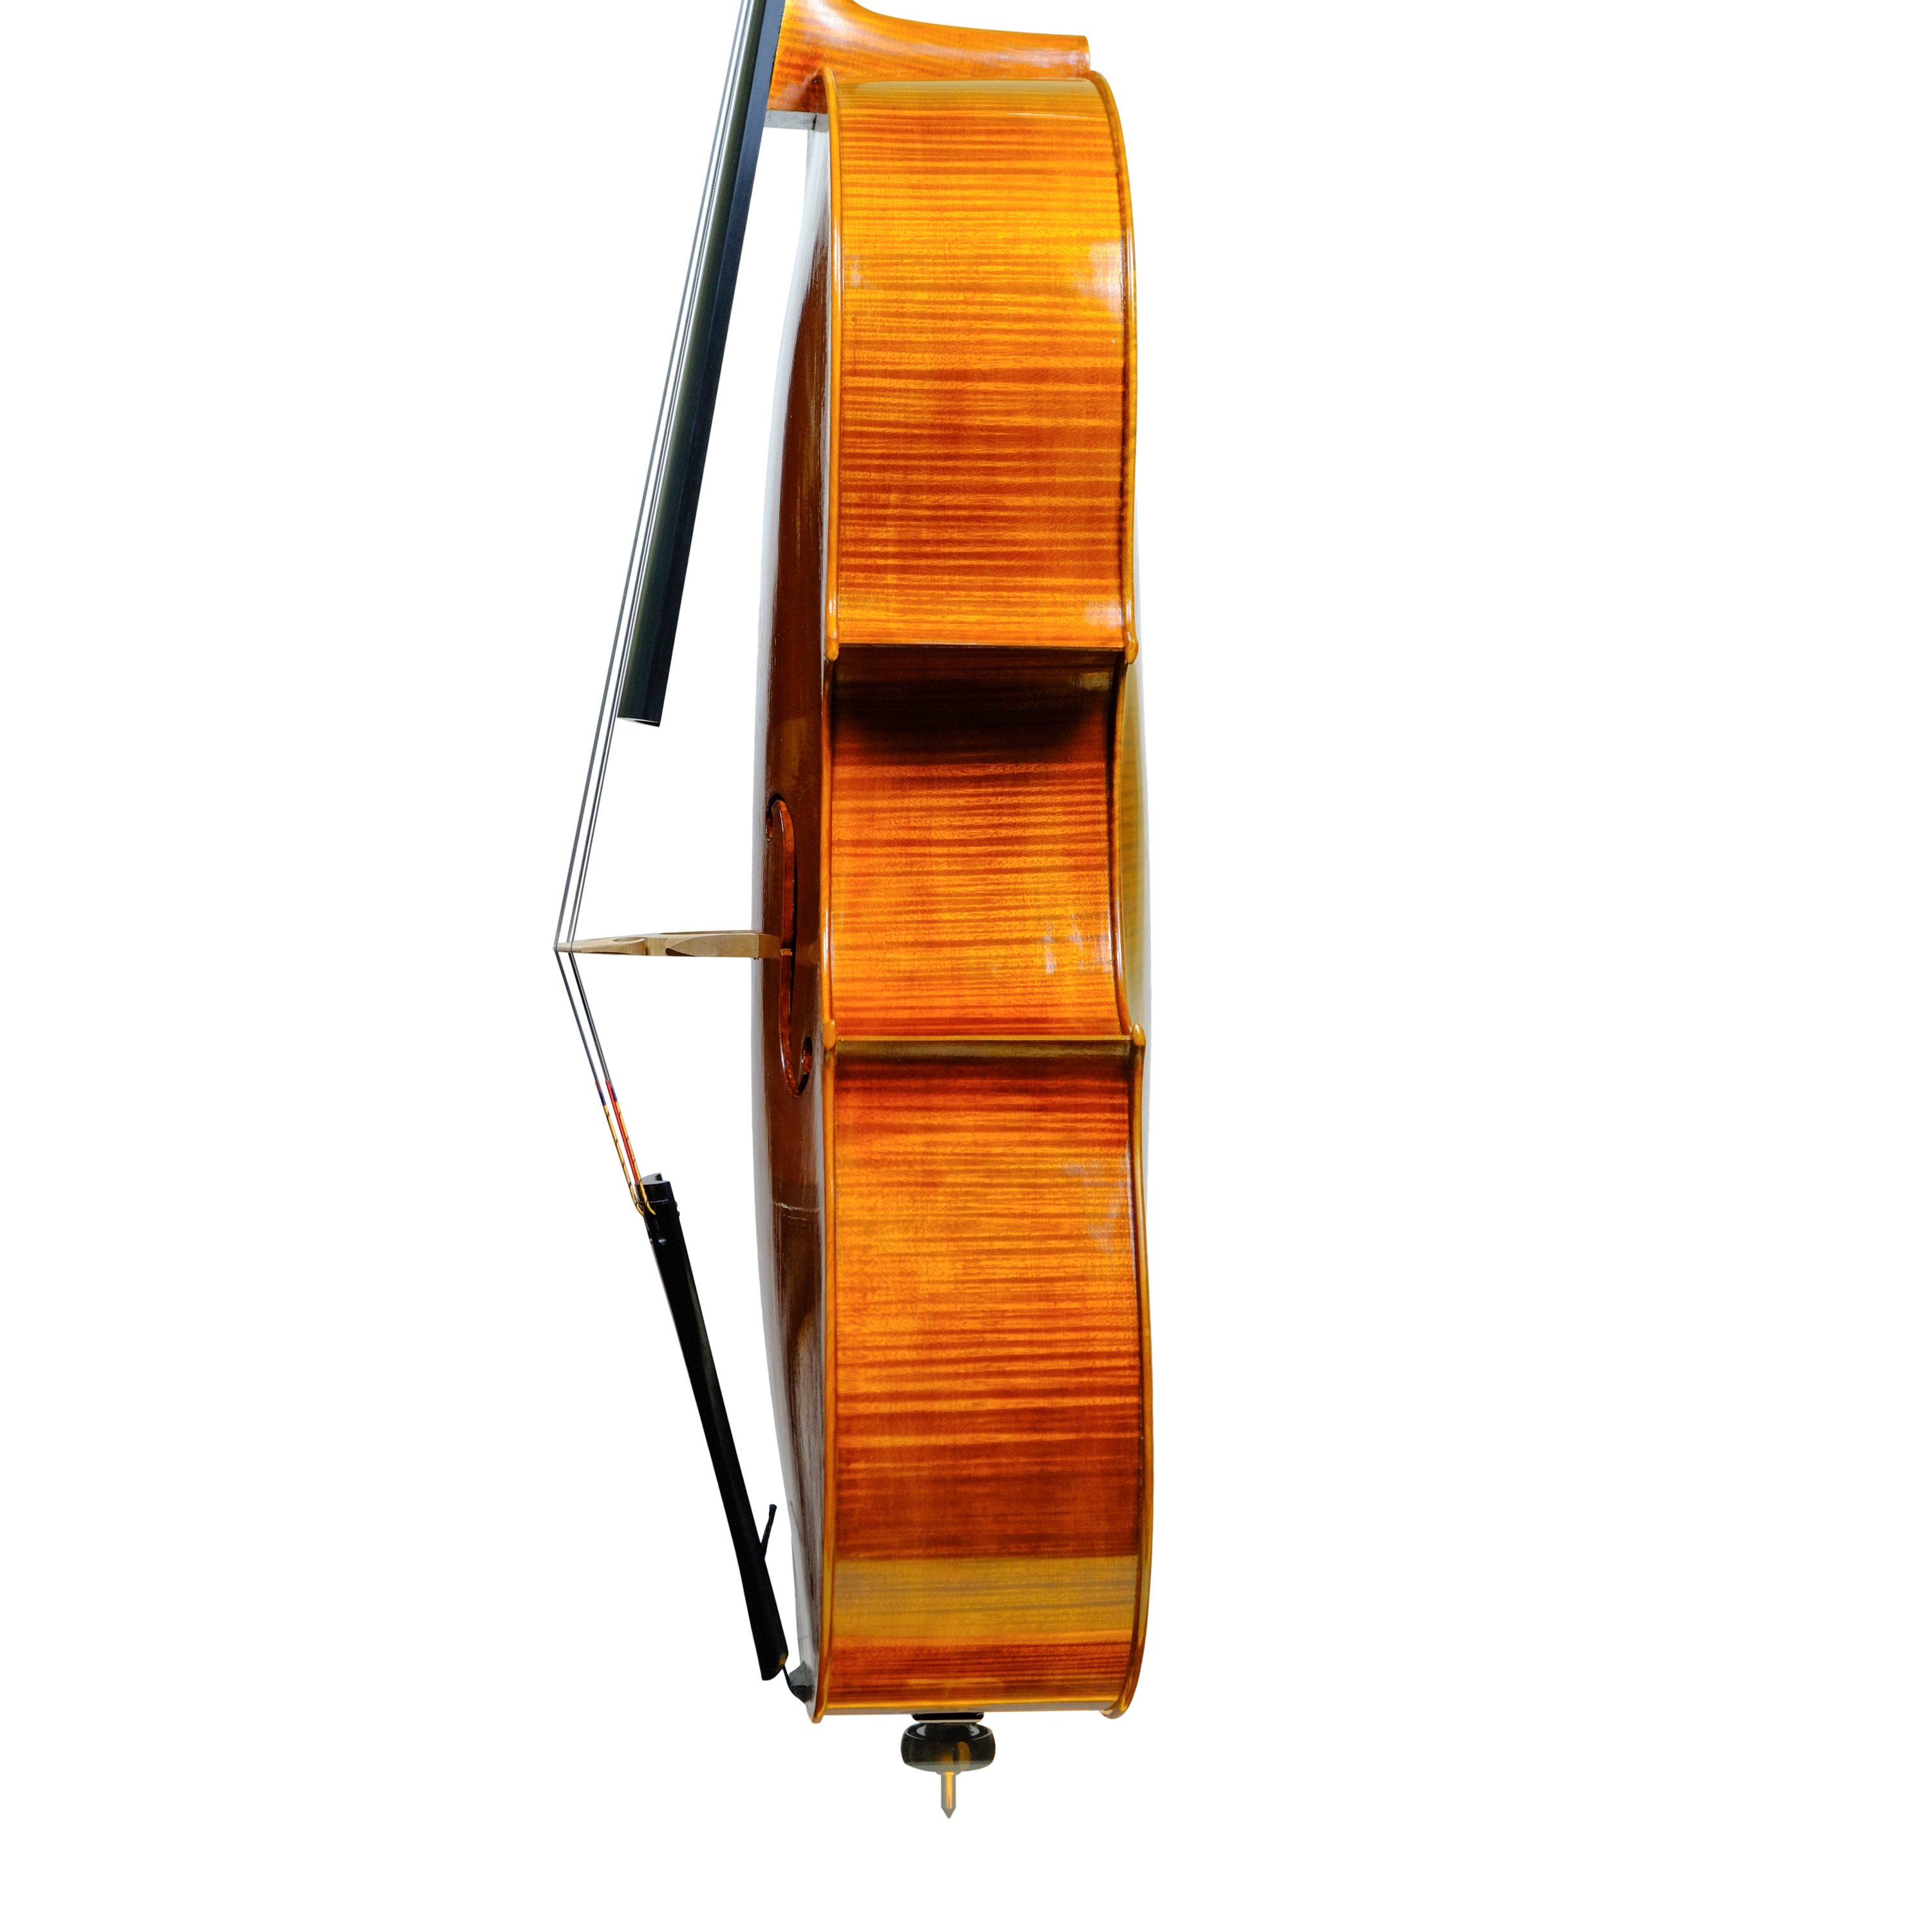 Cello - Linea Macchi 7/8, Montagnana, Cremona 2023